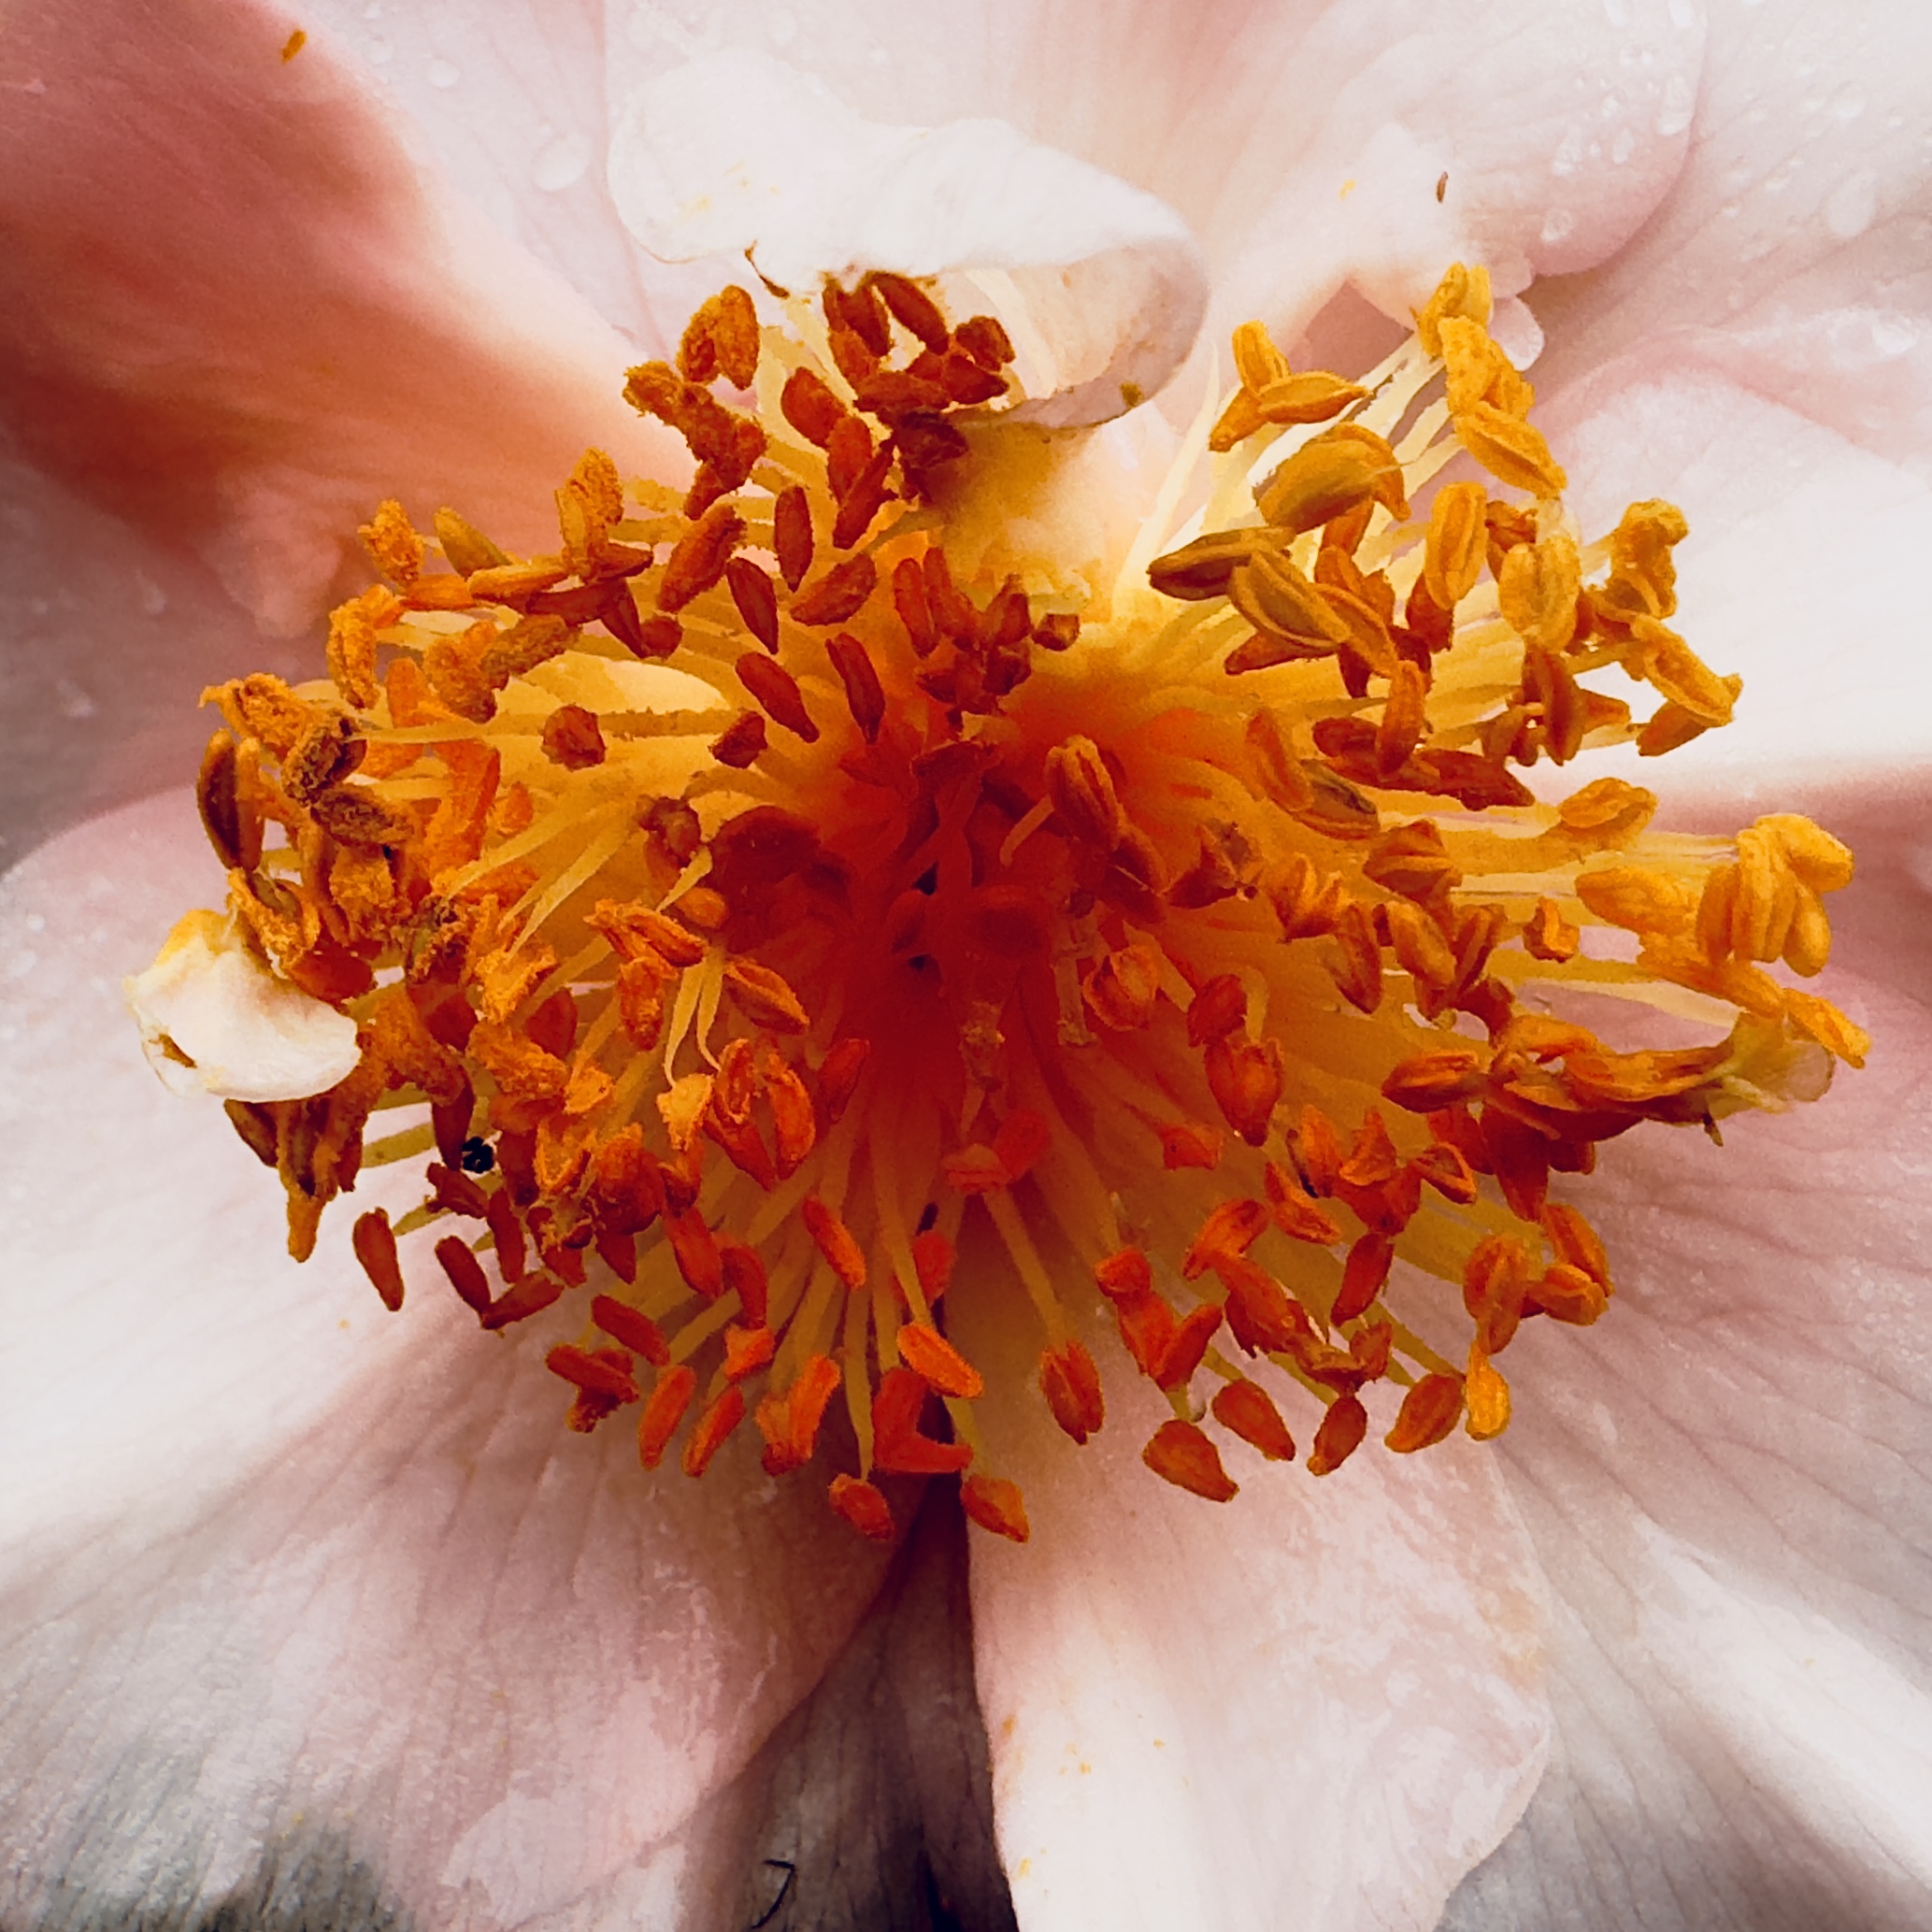 Grande plano de uma flor com pétalas rosa claro. Foco nas anteras e filetes da flor, muito laranjas e carregadas de pólen.